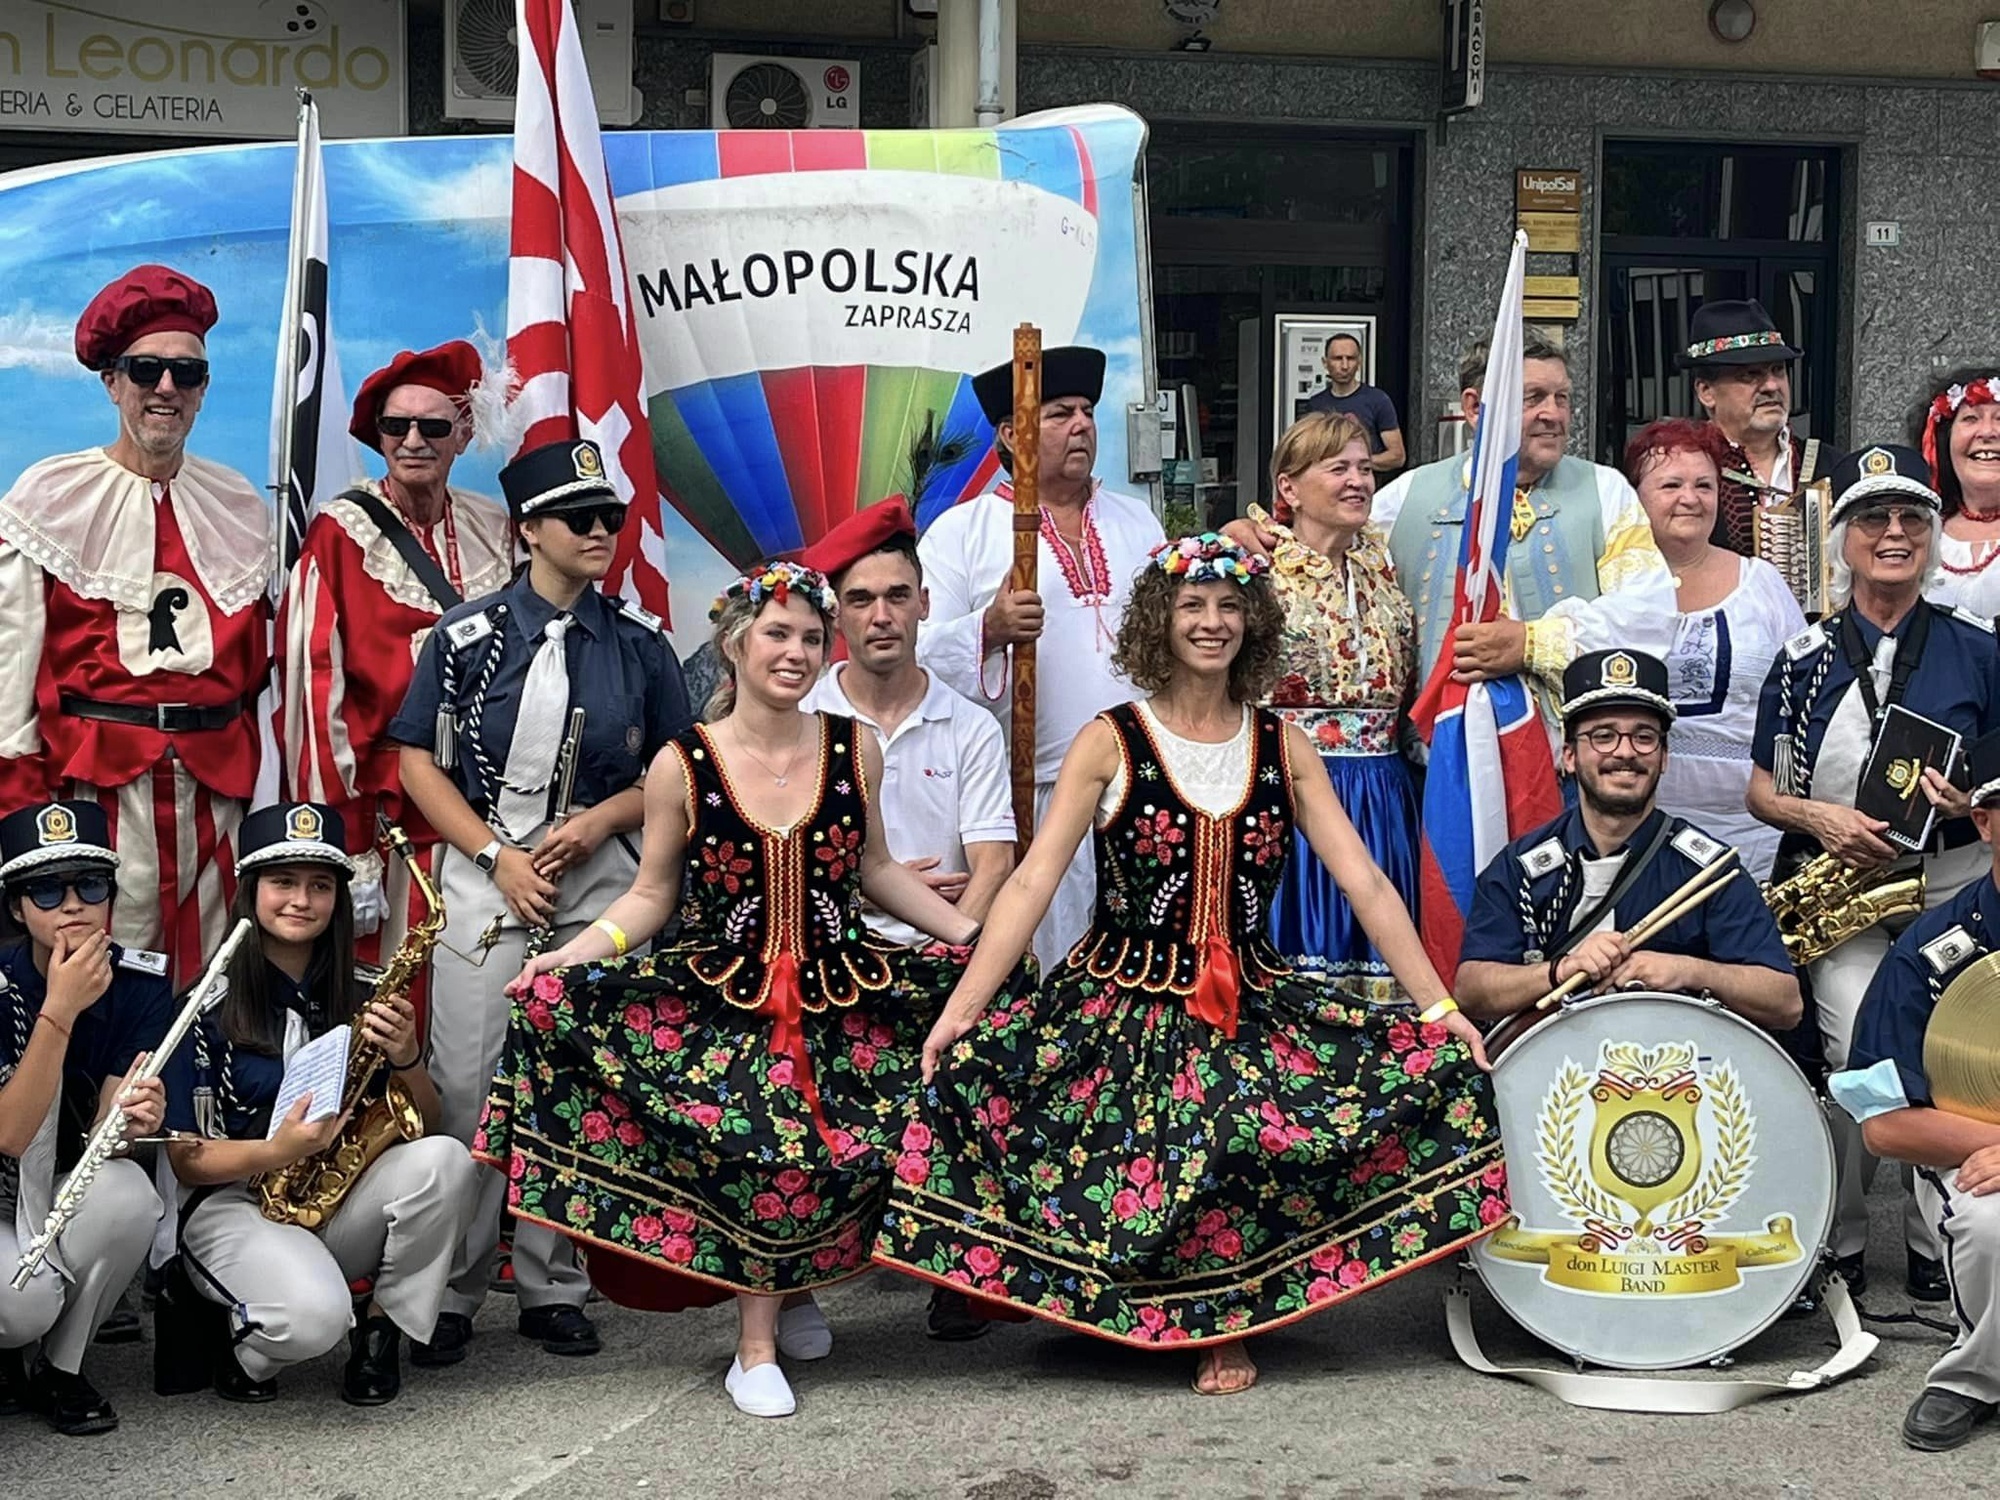 Atrakcje małopolski podczas zlotu Europa Rally